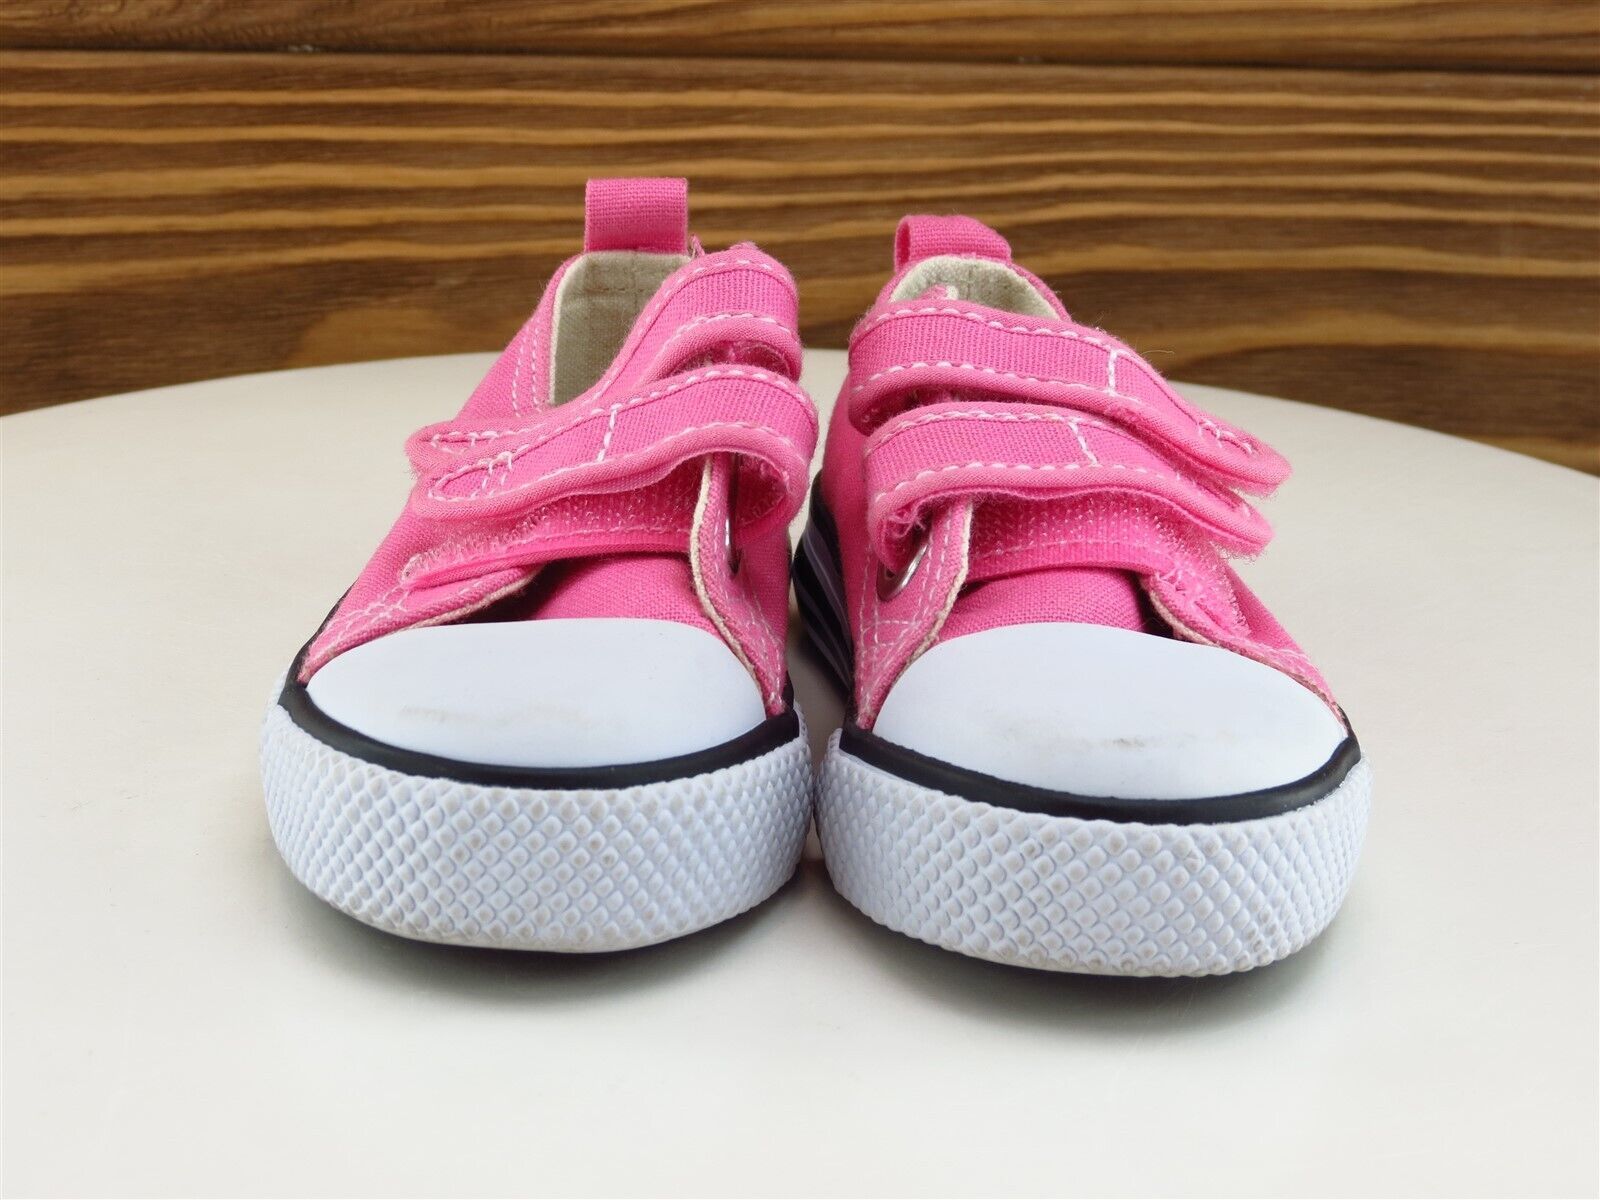 Koala Kids Sz 6 Toddler Shoes Girls Sneaker Pink Fabric Medium - $21.78